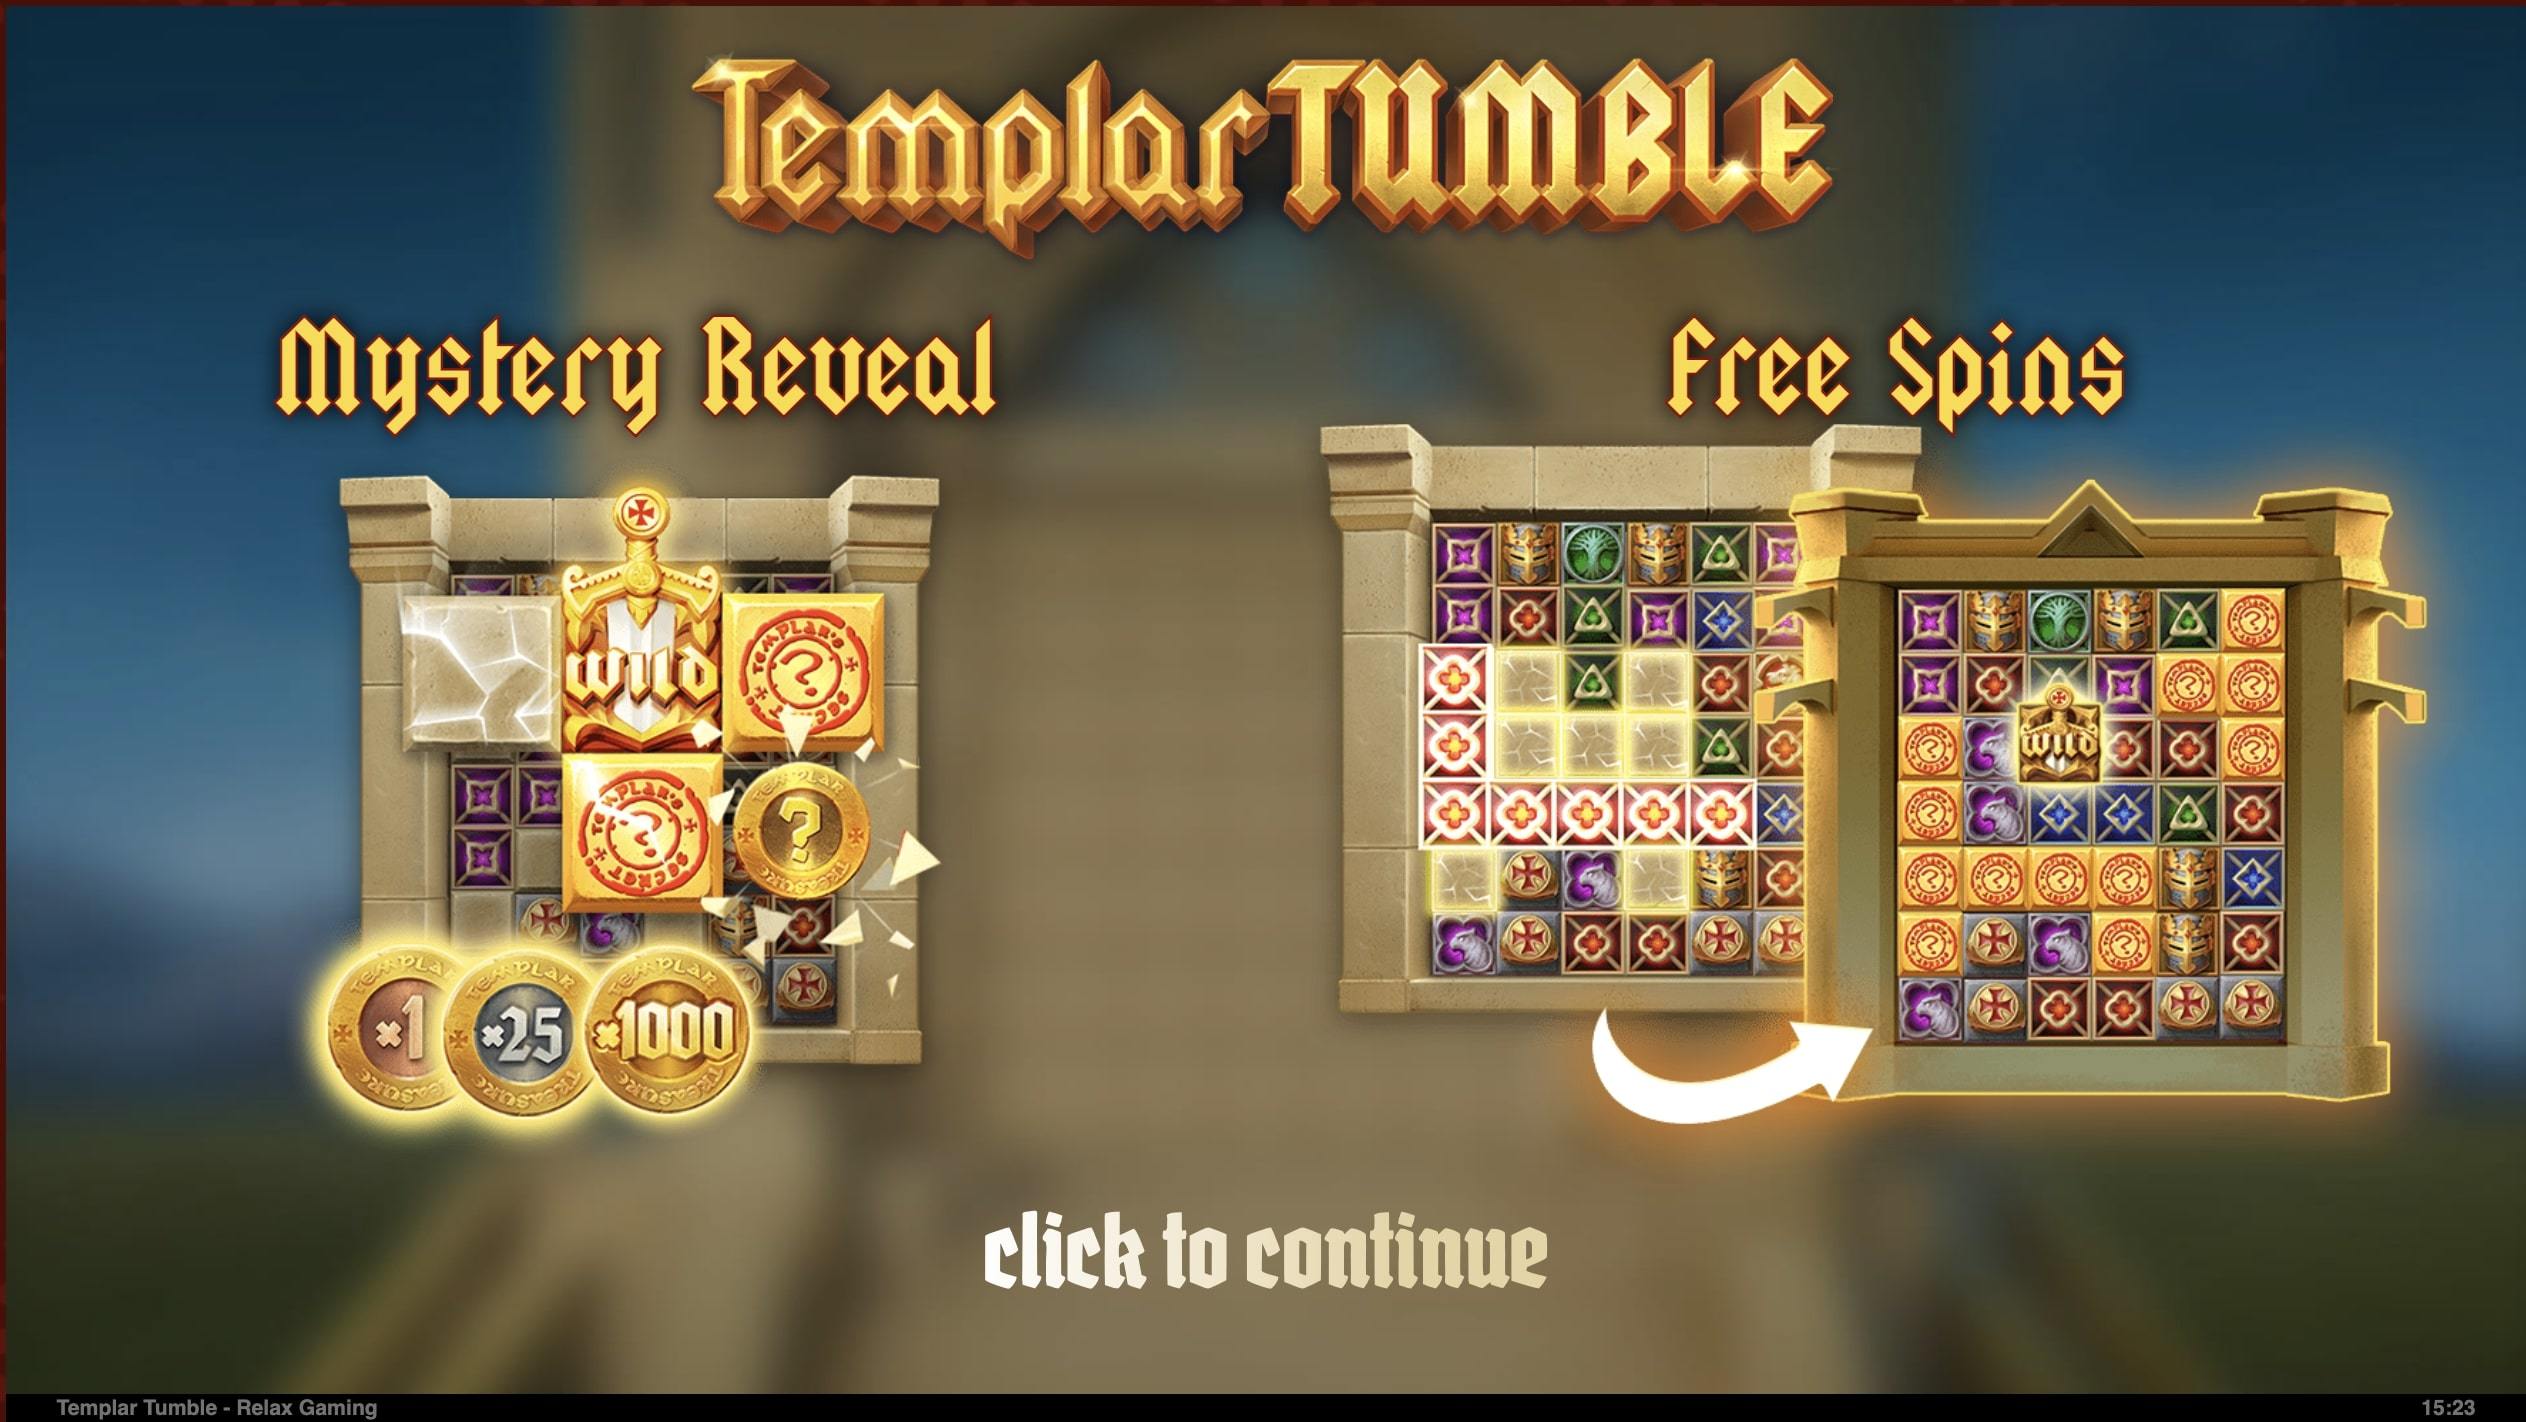  Templar Tumble Slot bonus features